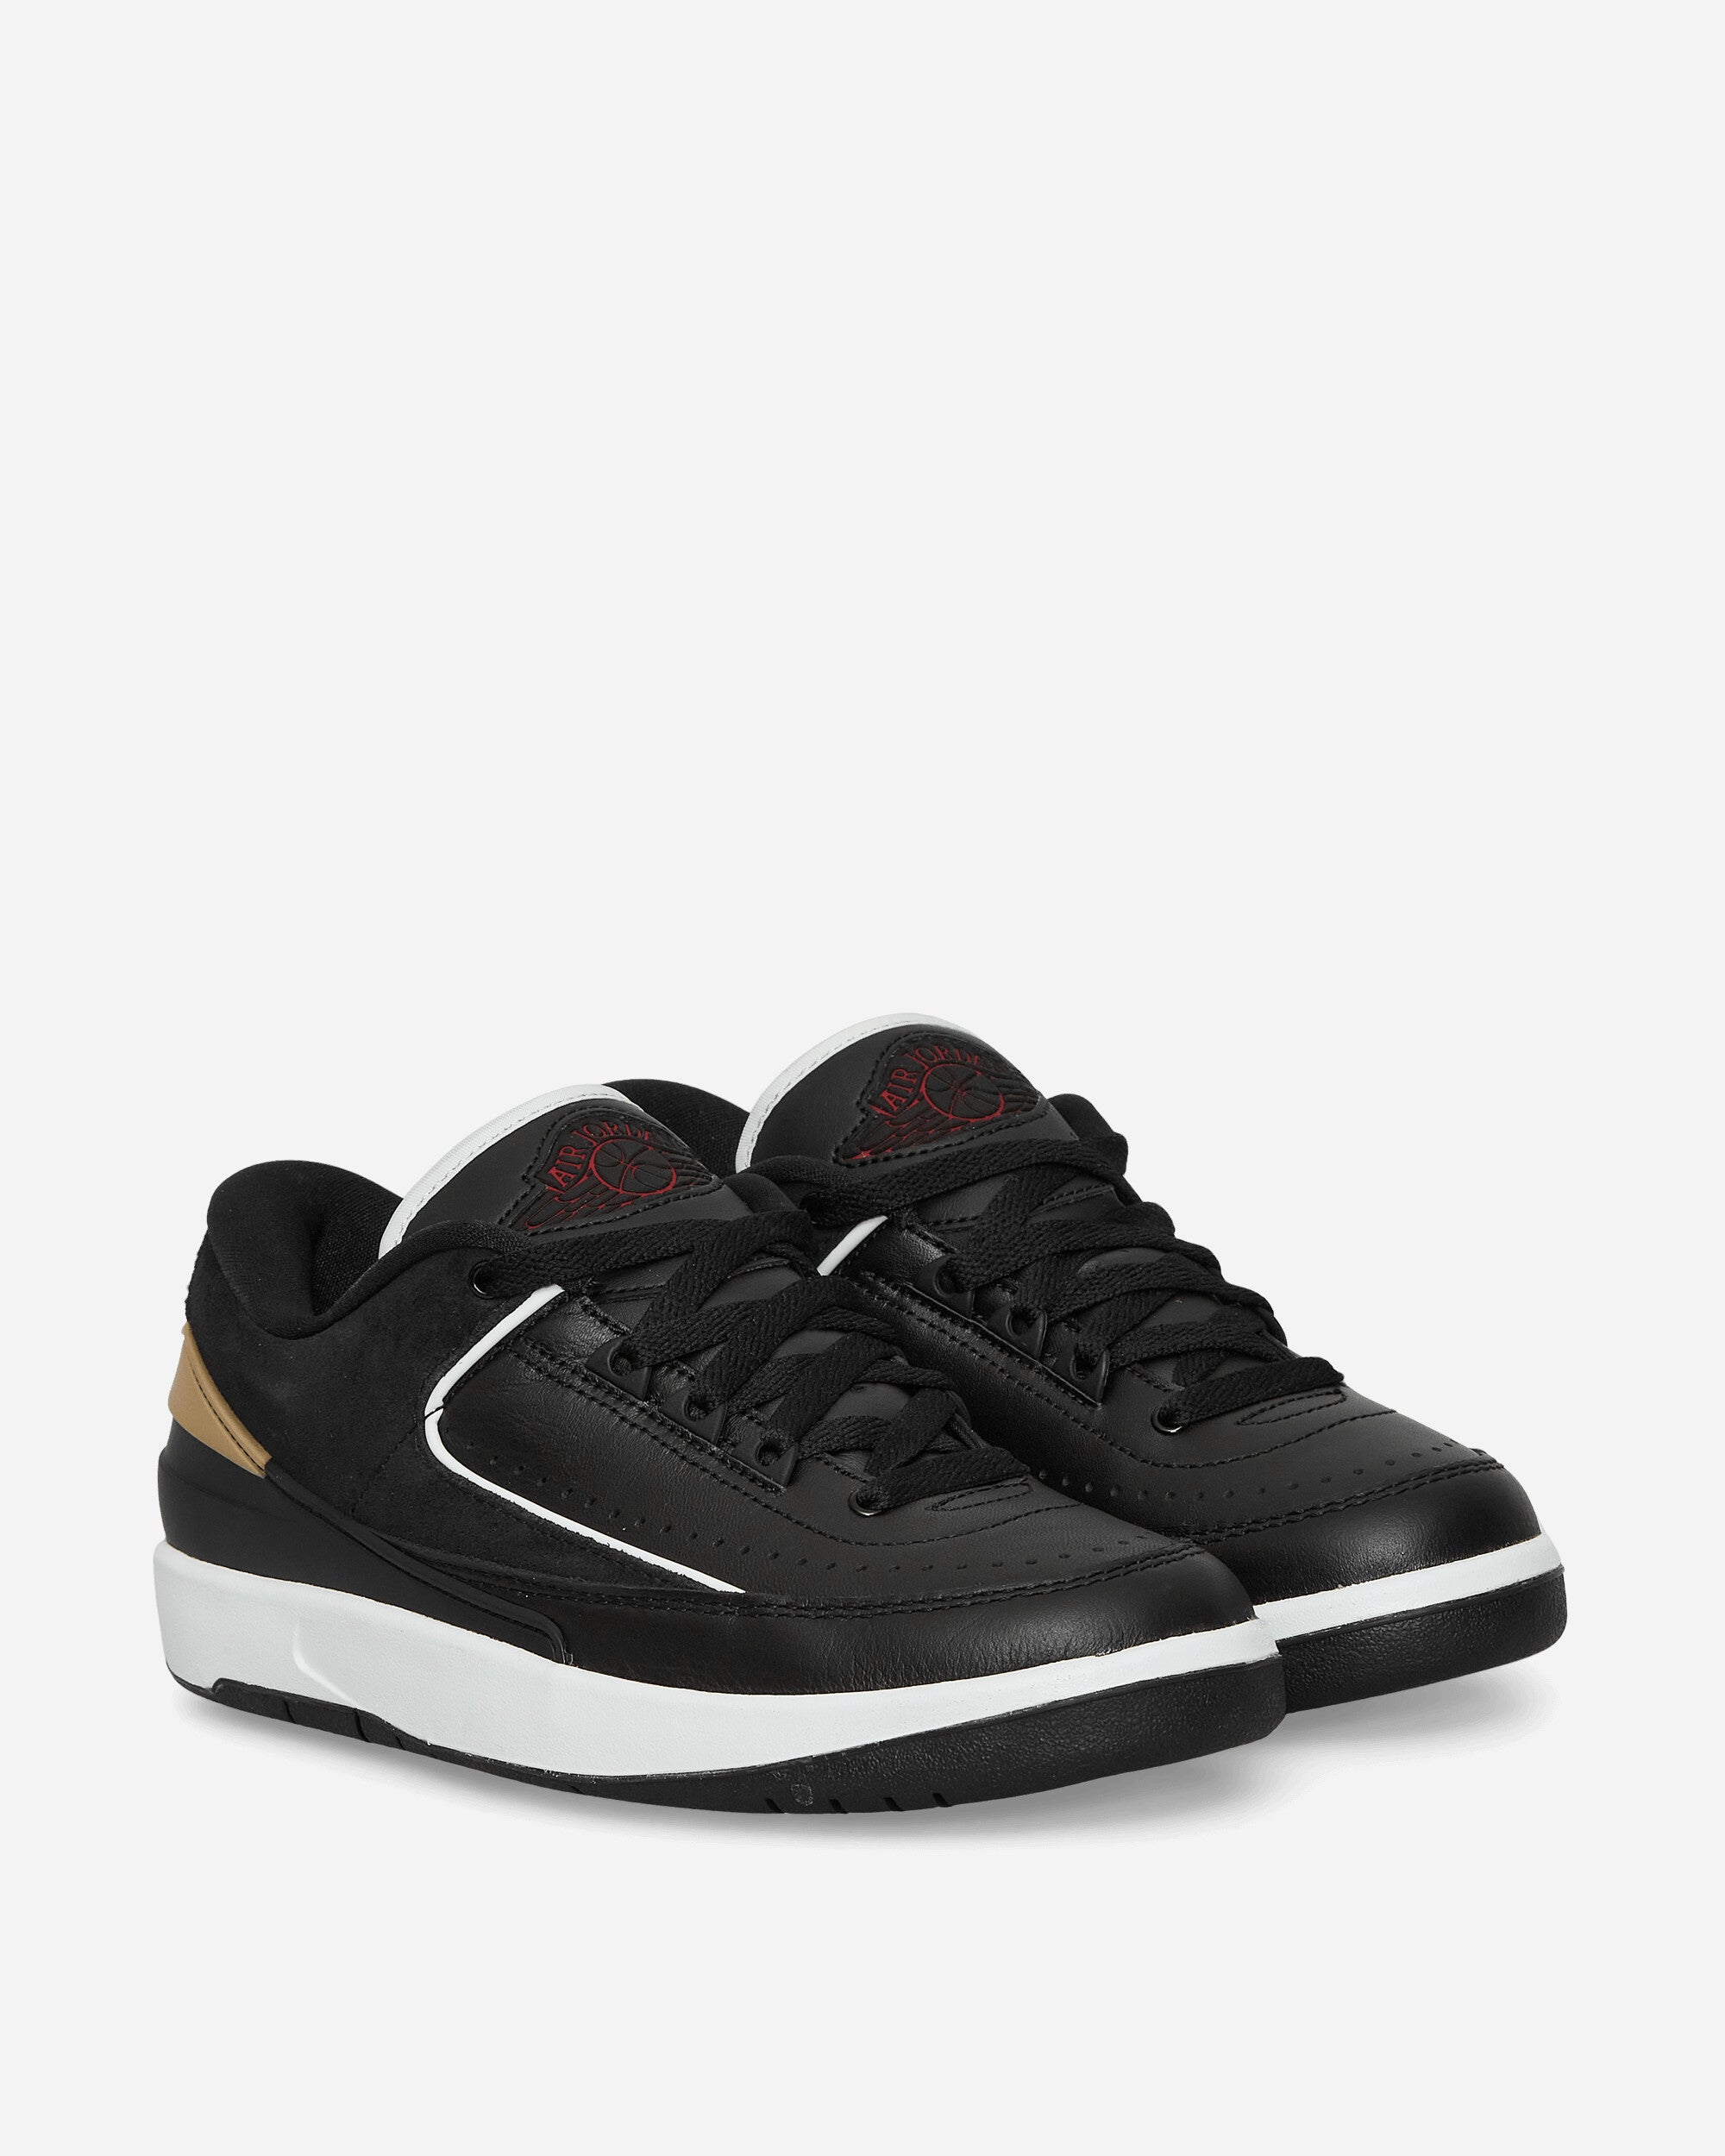 WMNS Air Jordan 2 Retro Low Sneakers Black